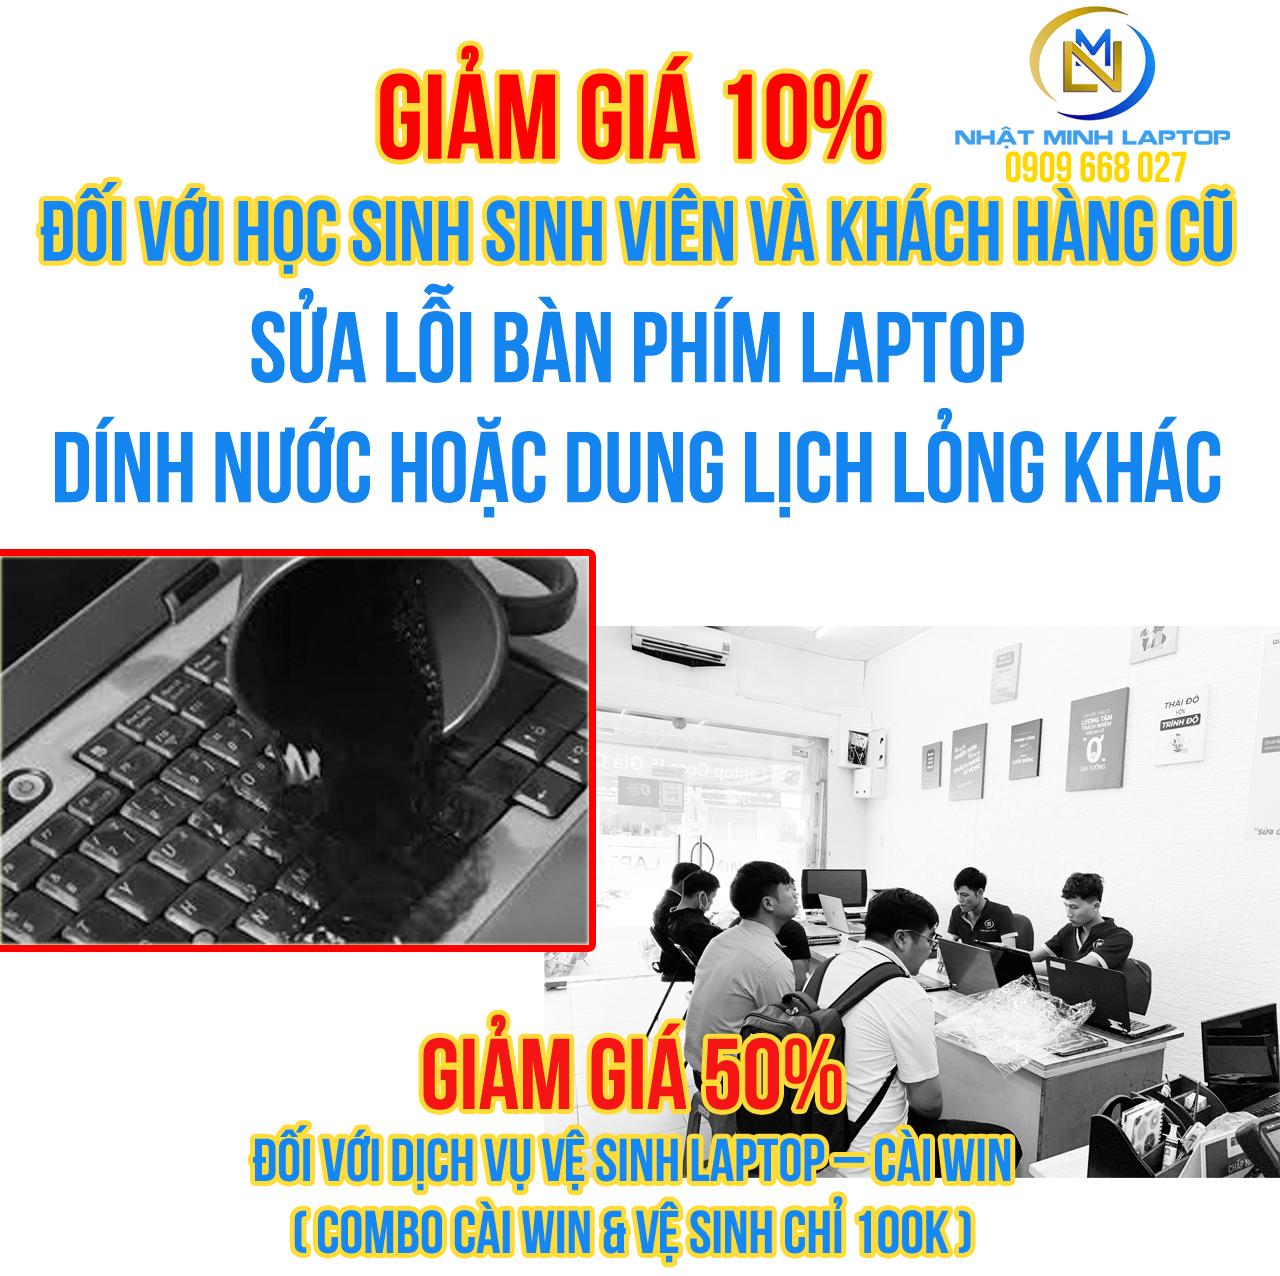 Thay bàn phím laptop ở đâu uy tín nhất Quận Tân Phú